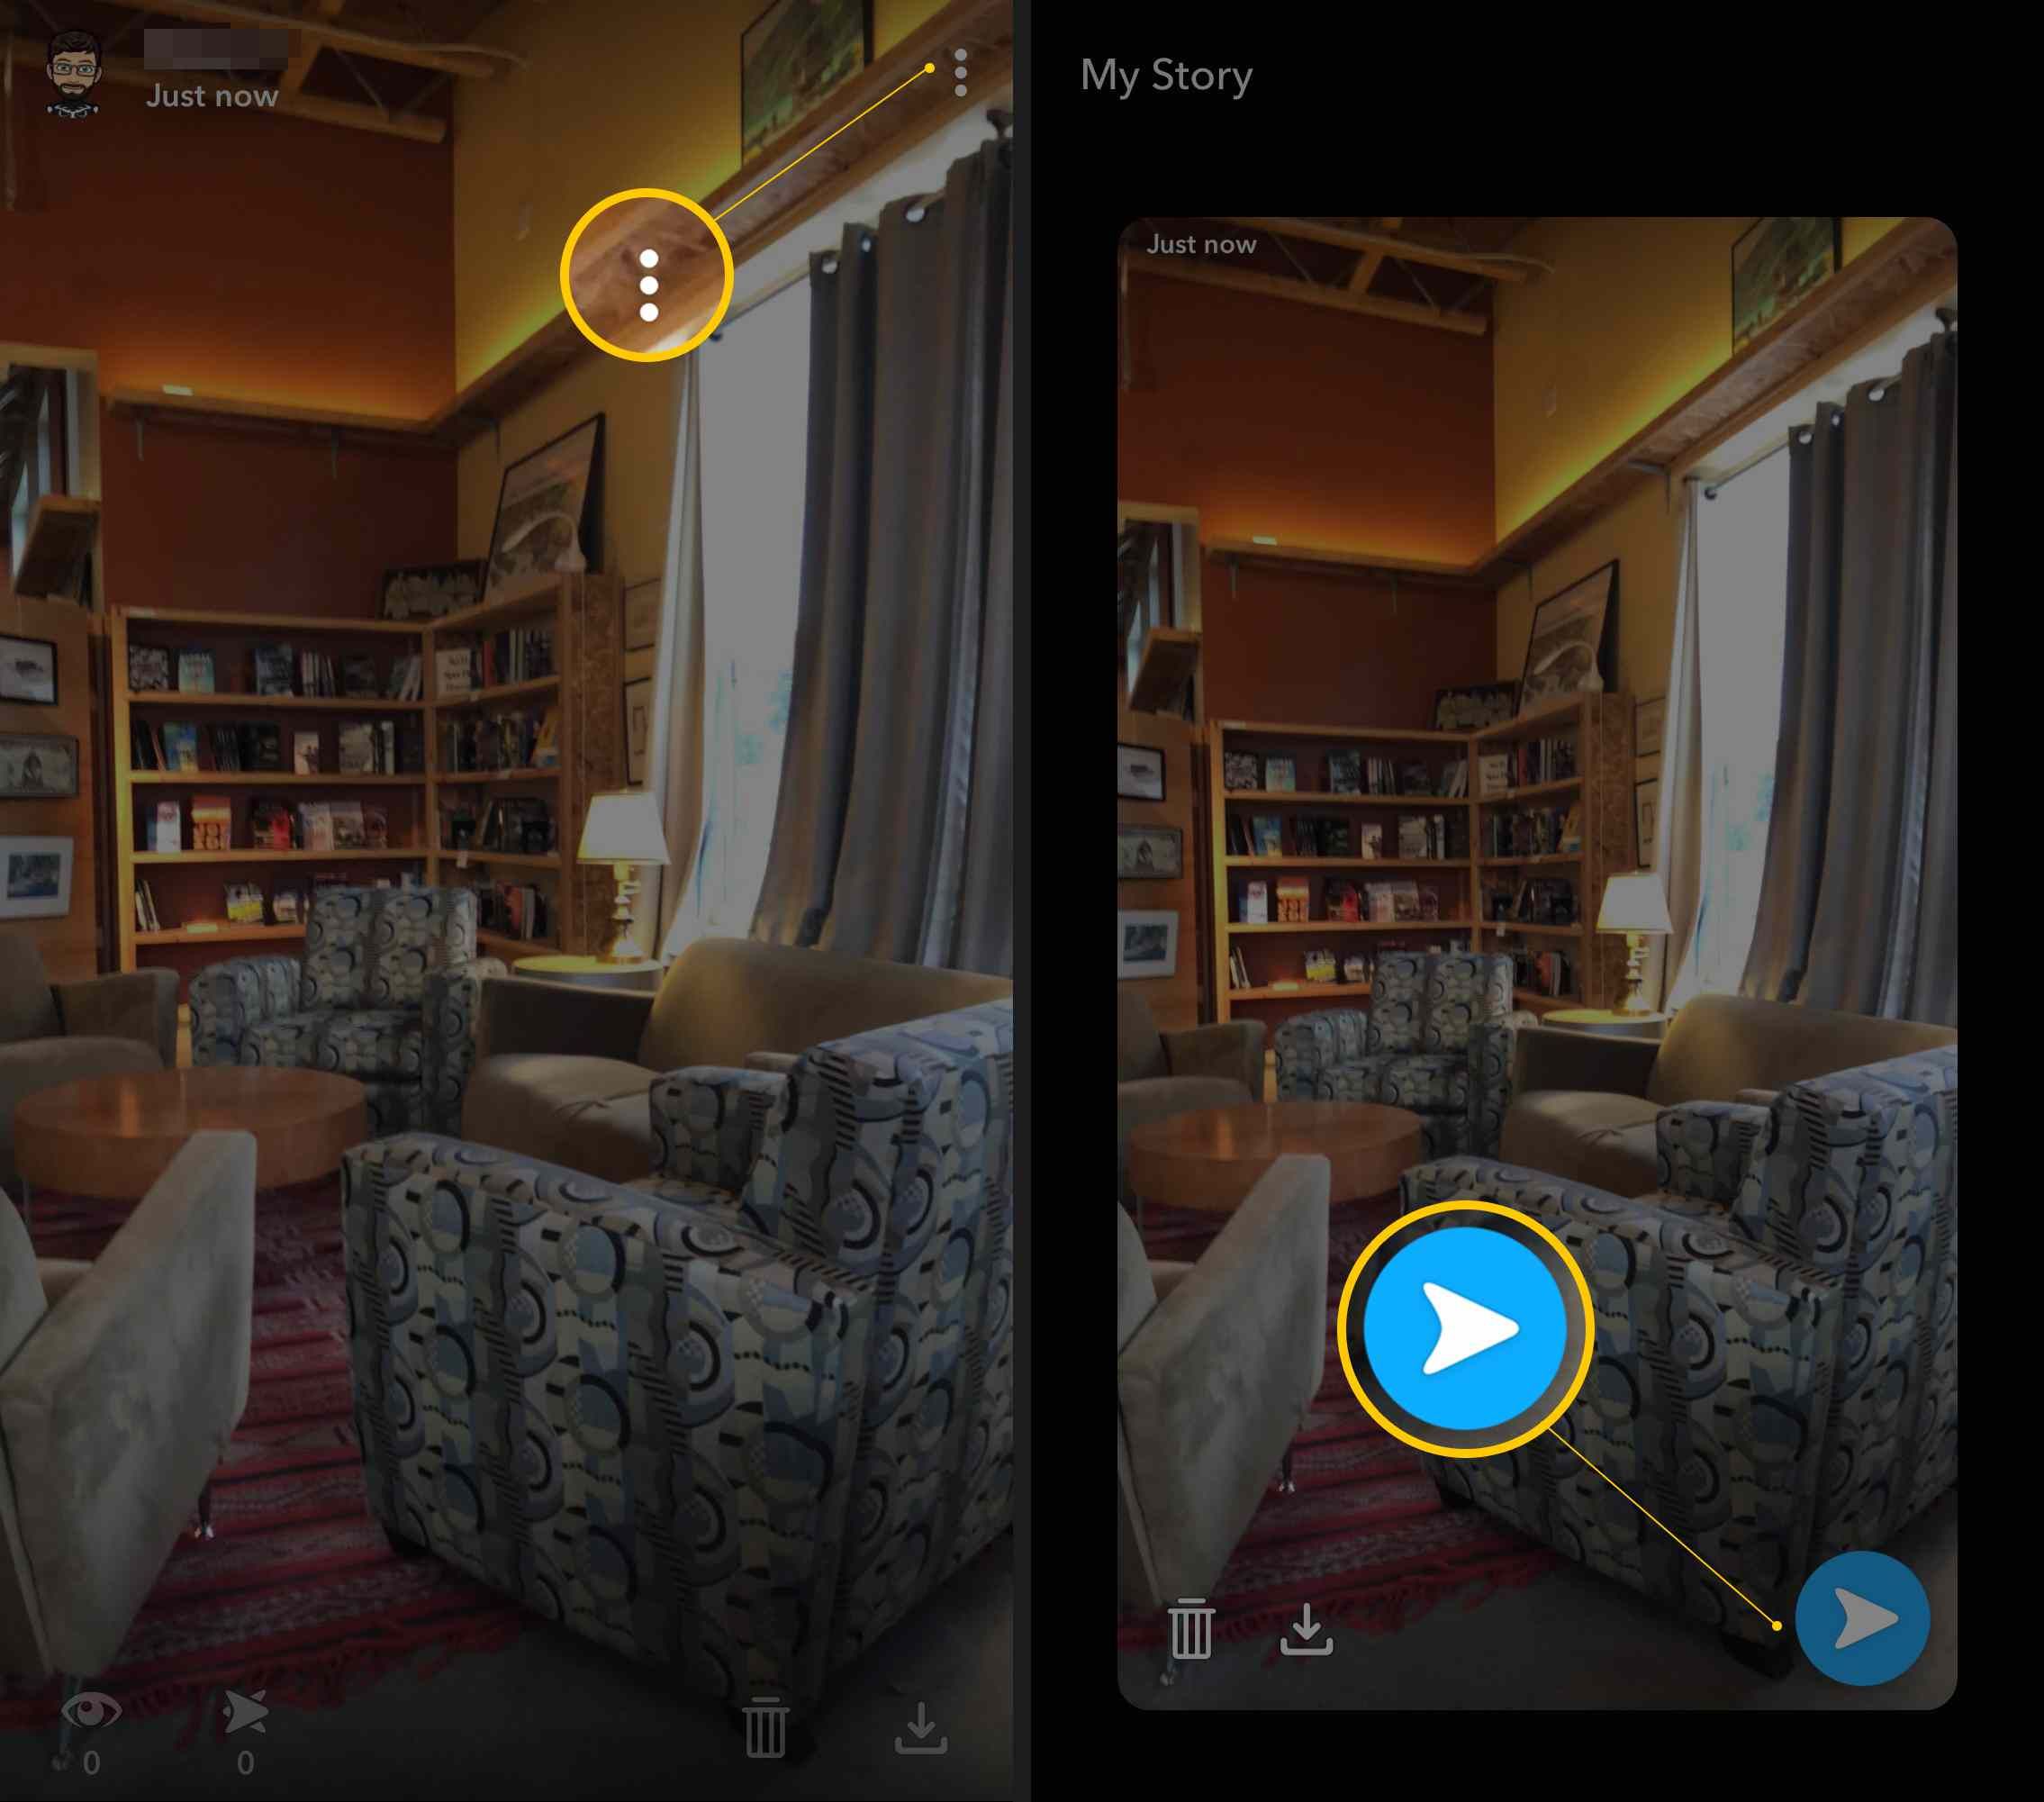 Два экрана iOS Snapchat с трехточечным меню и кнопкой отправки